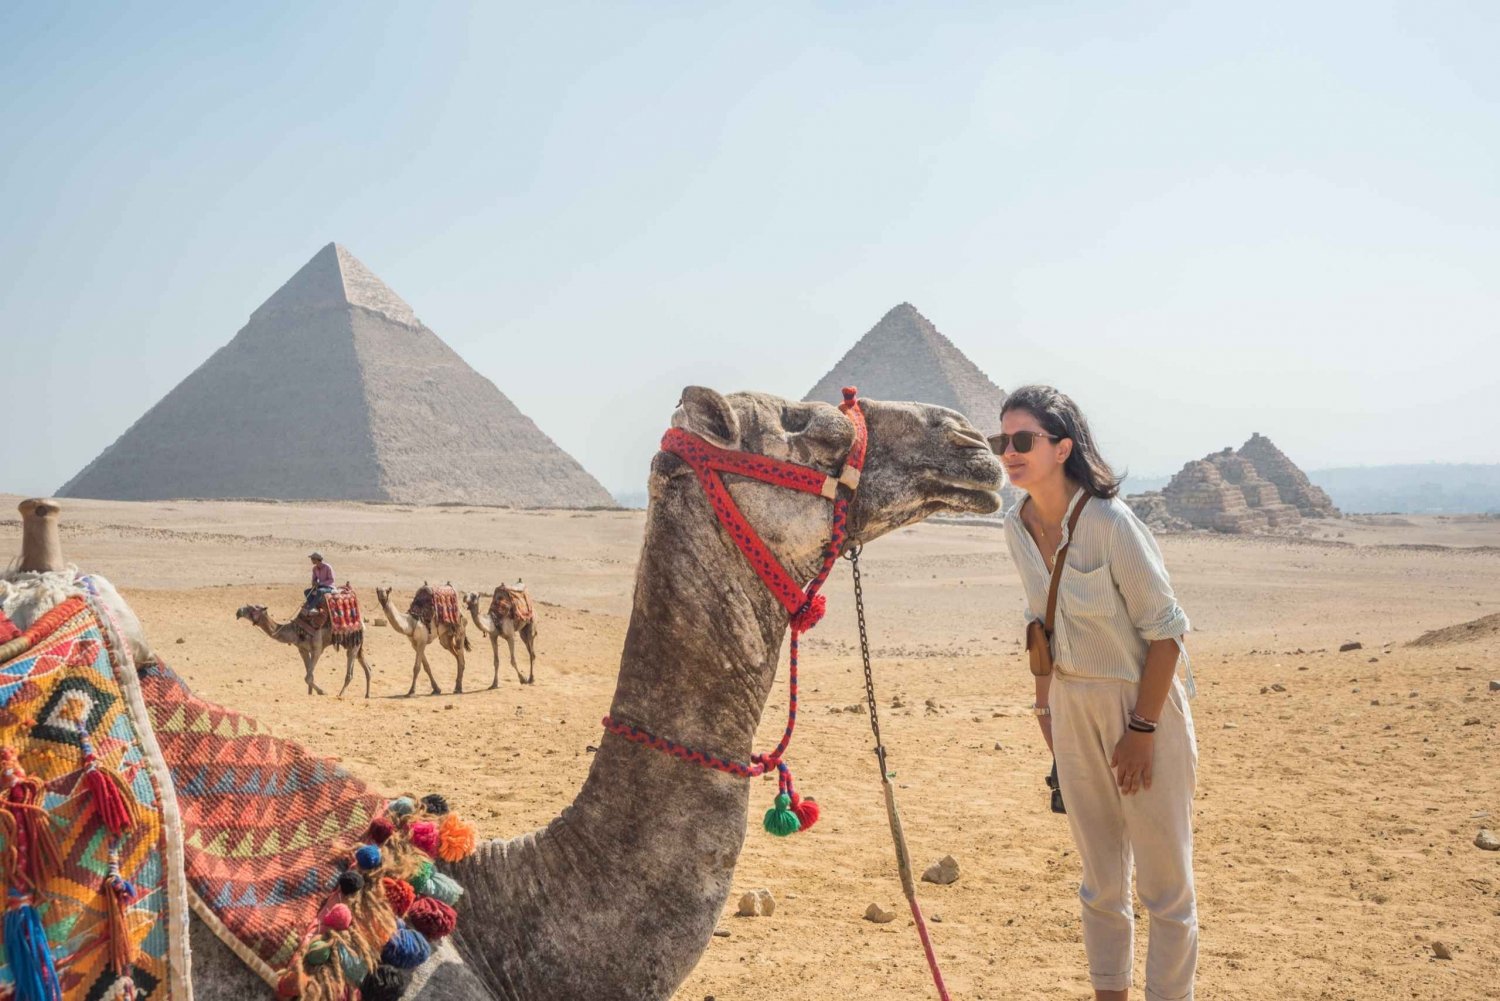 Cairo: Pyramids, Bazaar, Citadel Tour with Photographer